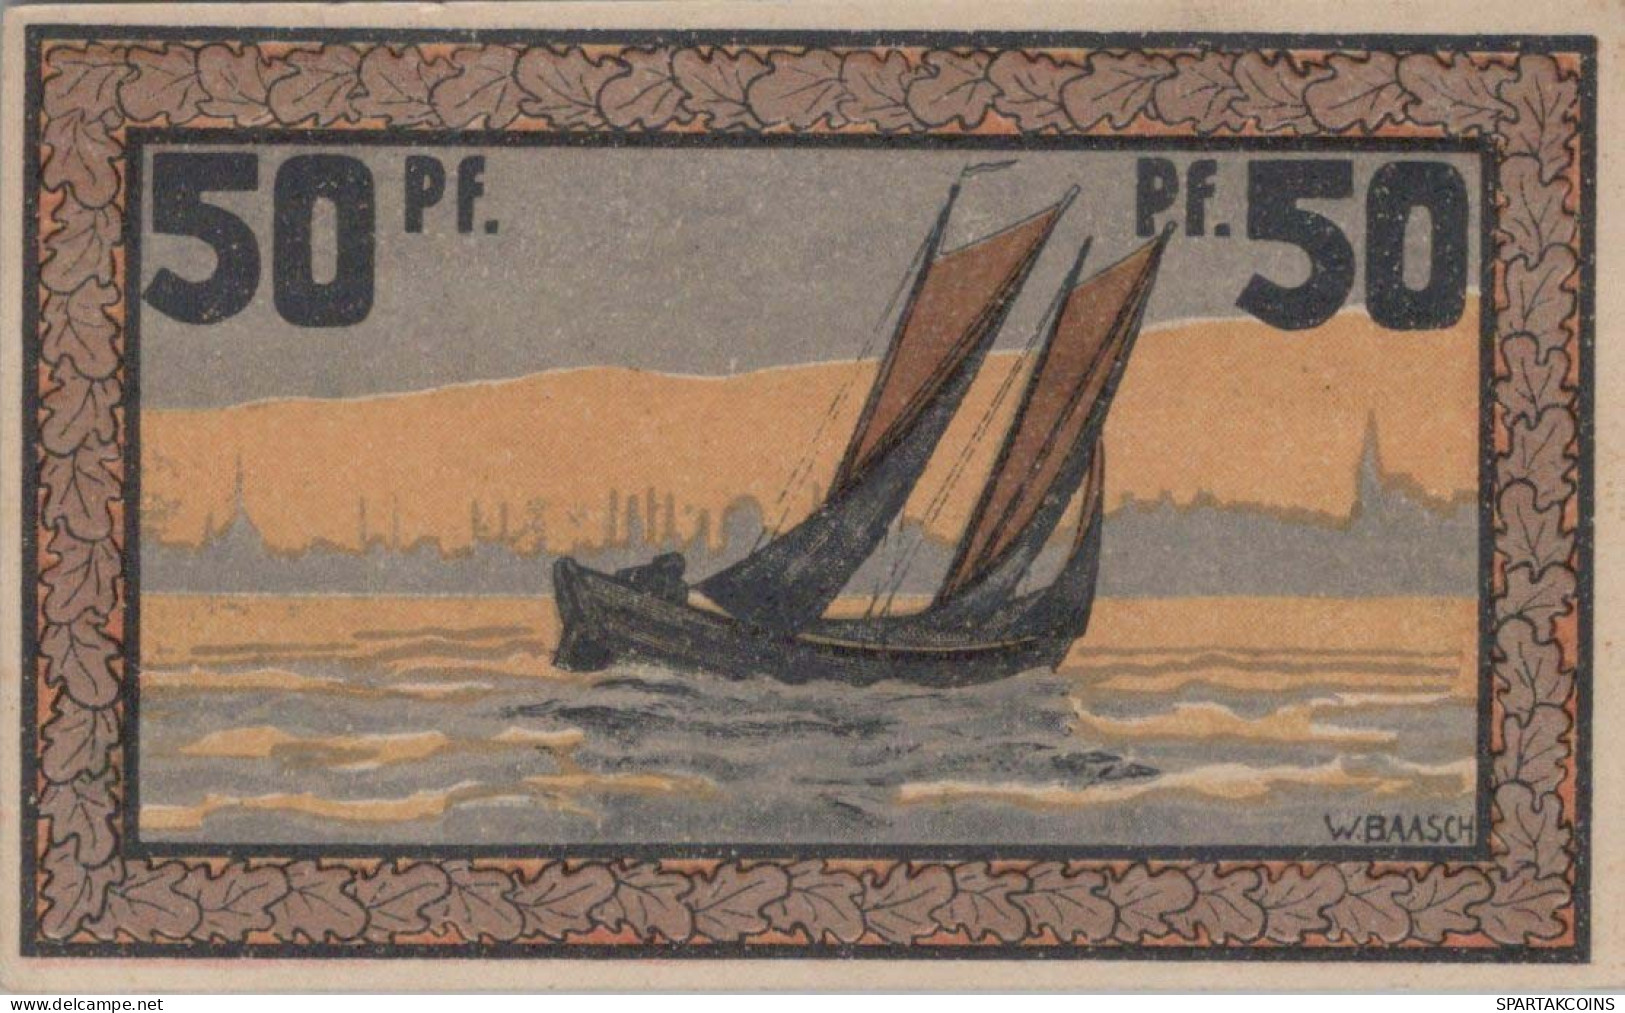 50 PFENNIG 1921 Stadt ECKERNFoRDE Schleswig-Holstein UNC DEUTSCHLAND #PA512 - [11] Local Banknote Issues